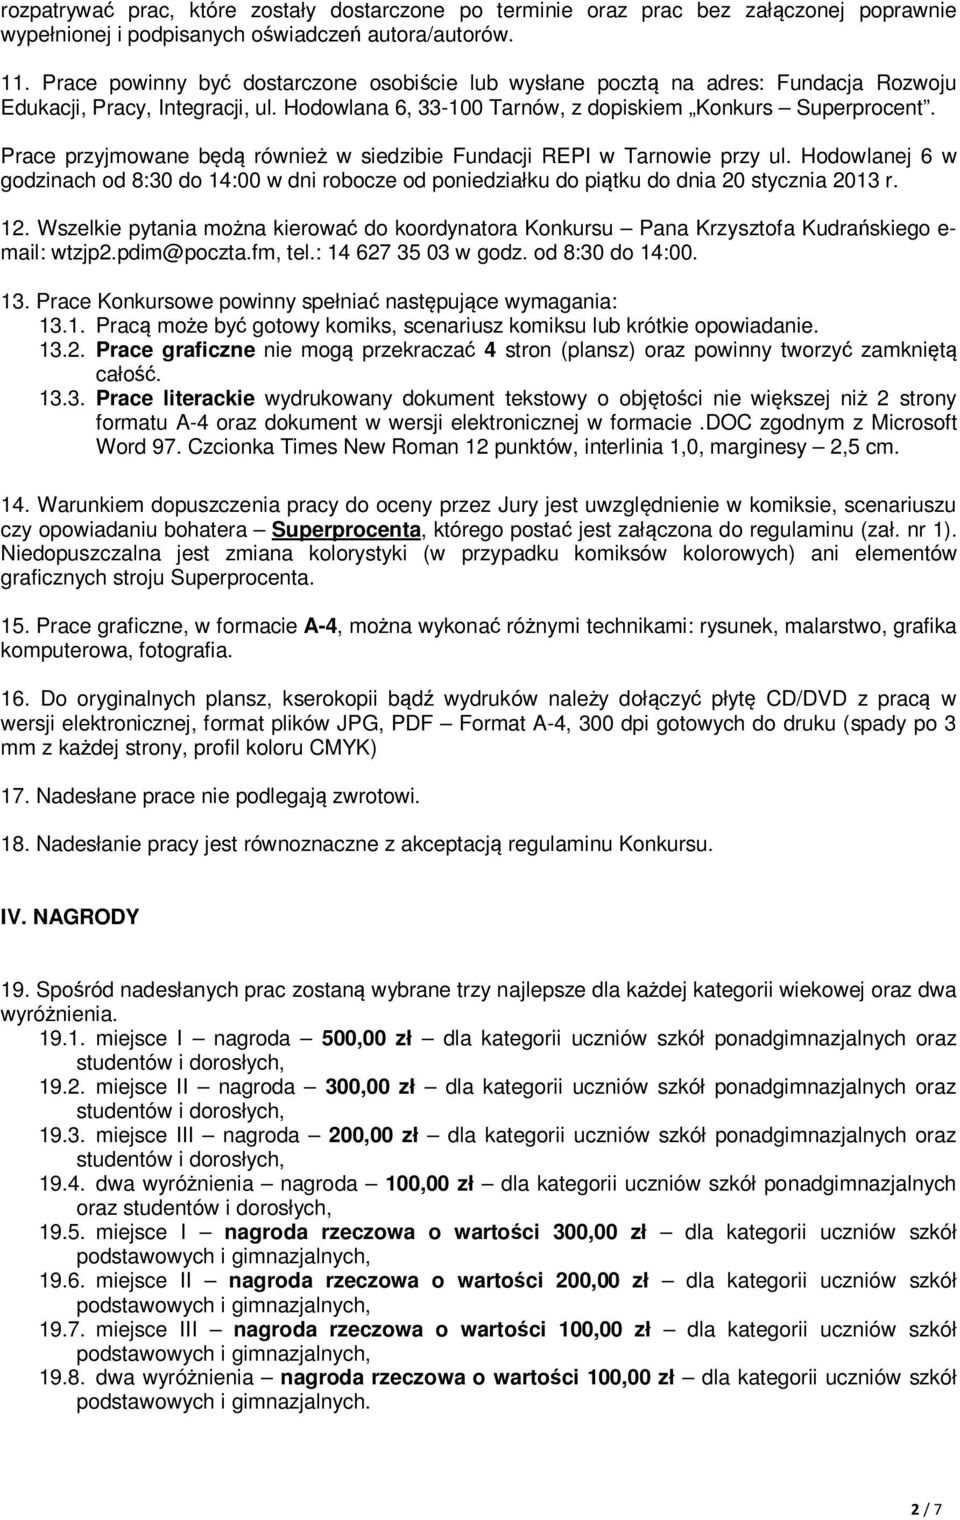 Prace przyjmowane będą również w siedzibie Fundacji REPI w Tarnowie przy ul. Hodowlanej 6 w godzinach od 8:30 do 14:00 w dni robocze od poniedziałku do piątku do dnia 20 stycznia 2013 r. 12.